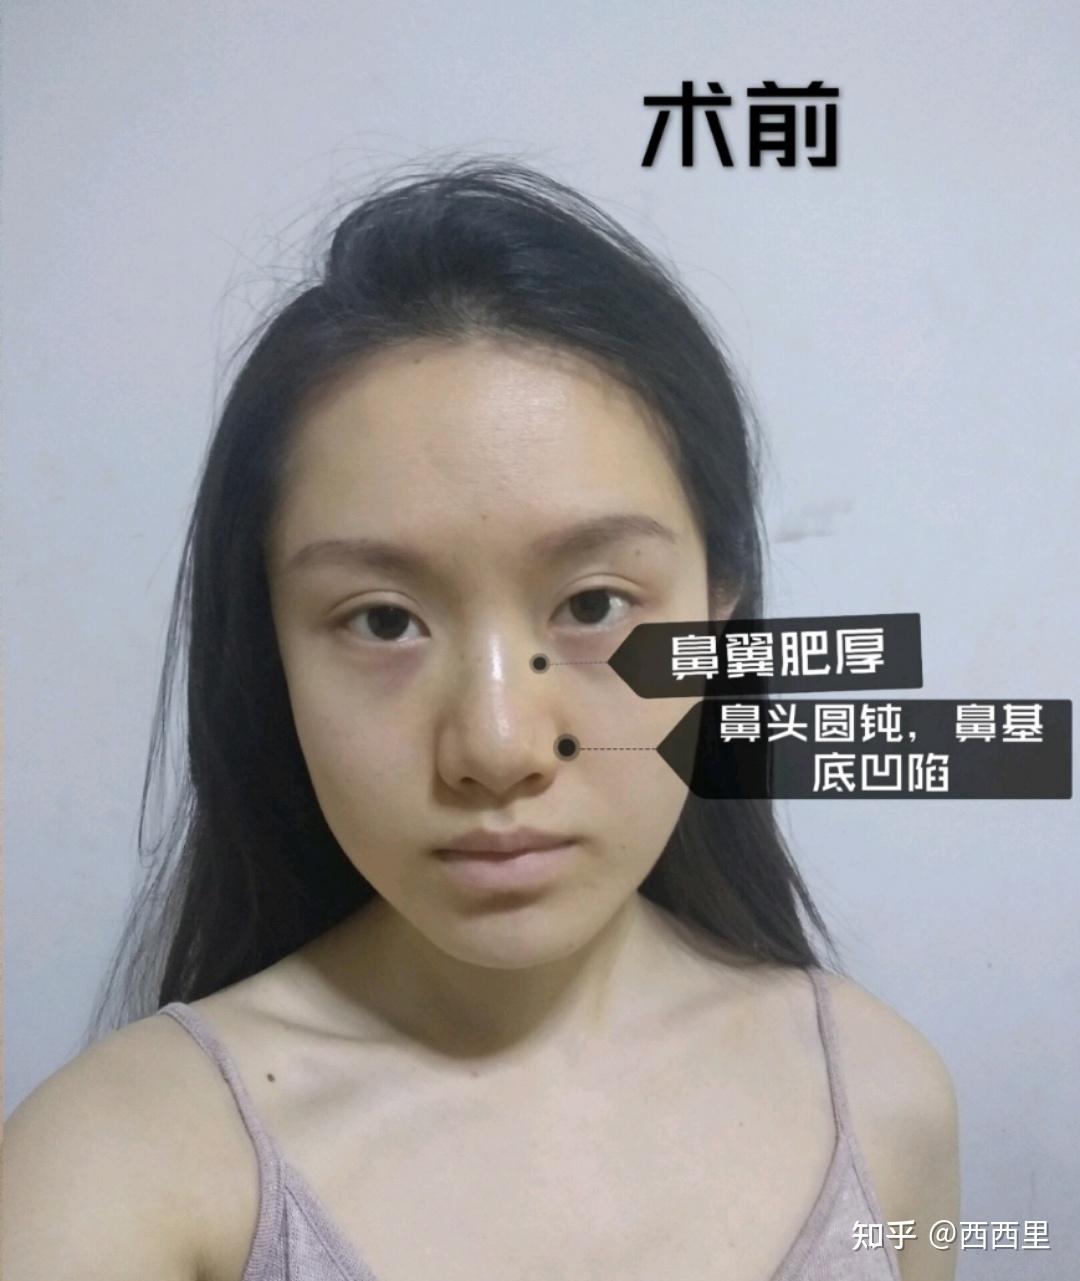 上海爱莫儿医疗美容肋软骨隆鼻怎么样_恢复过程_效果如何_娜娜小花花整形日记4.21_新氧美容整形